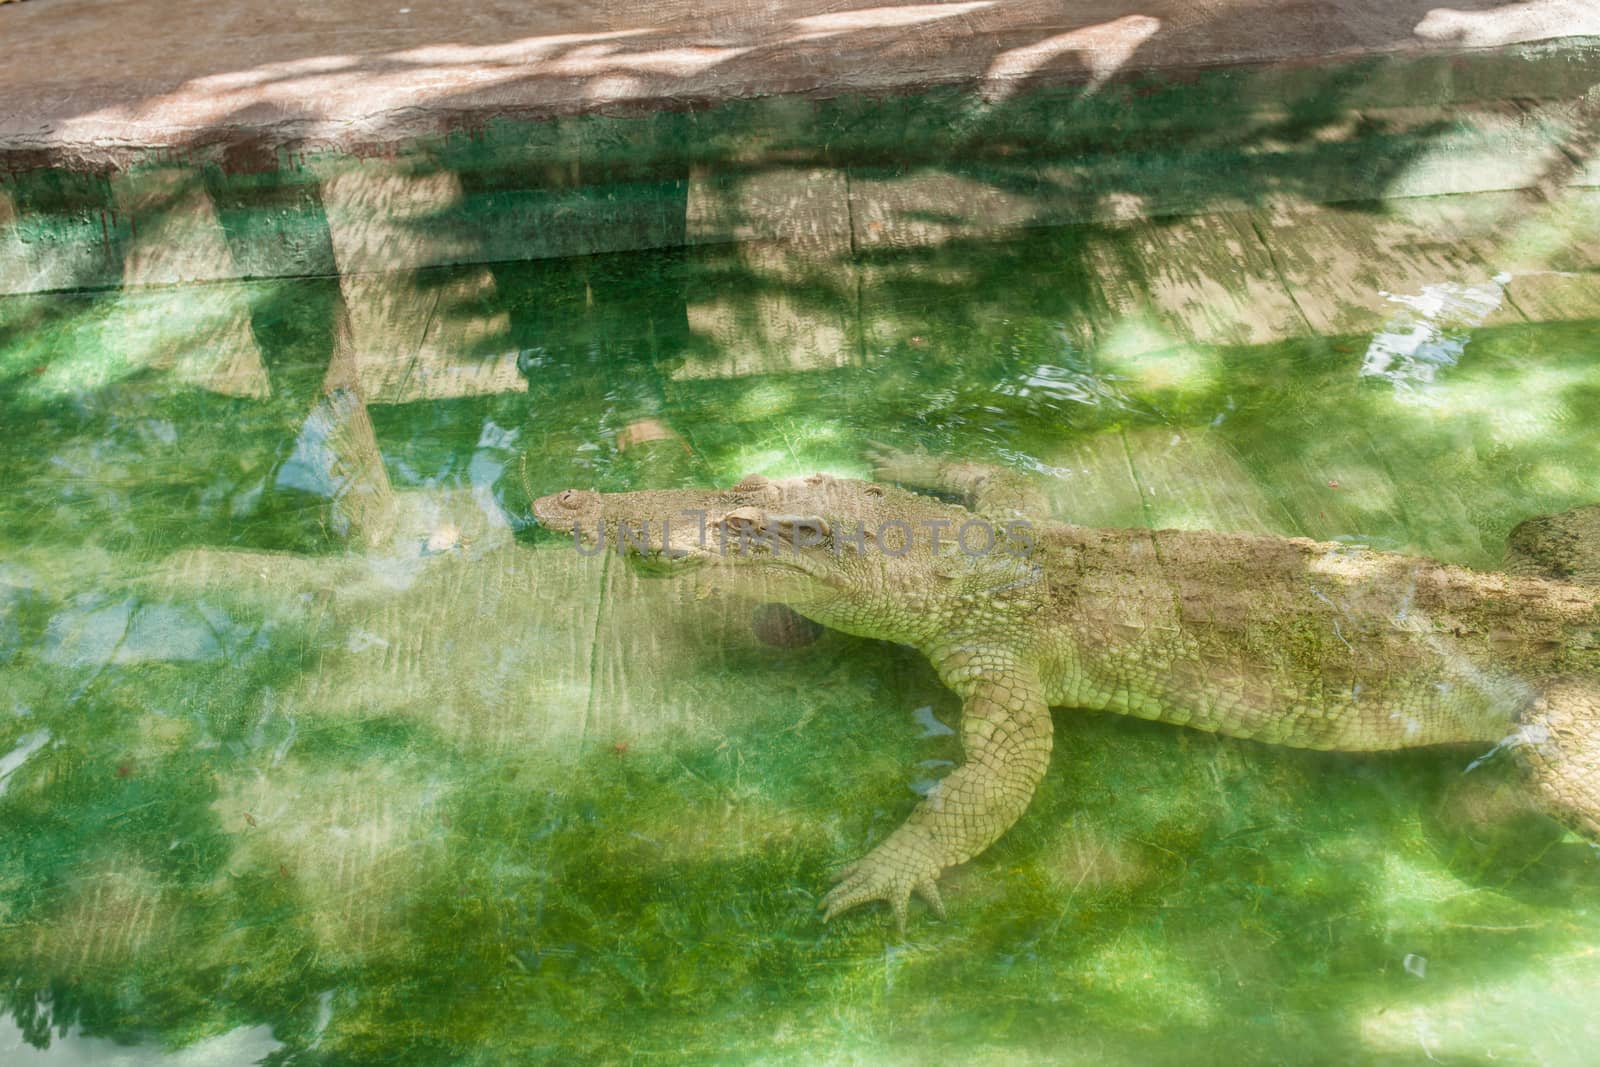 Albino Crocodile sleeping in water at zoo. Albino,Crocodile